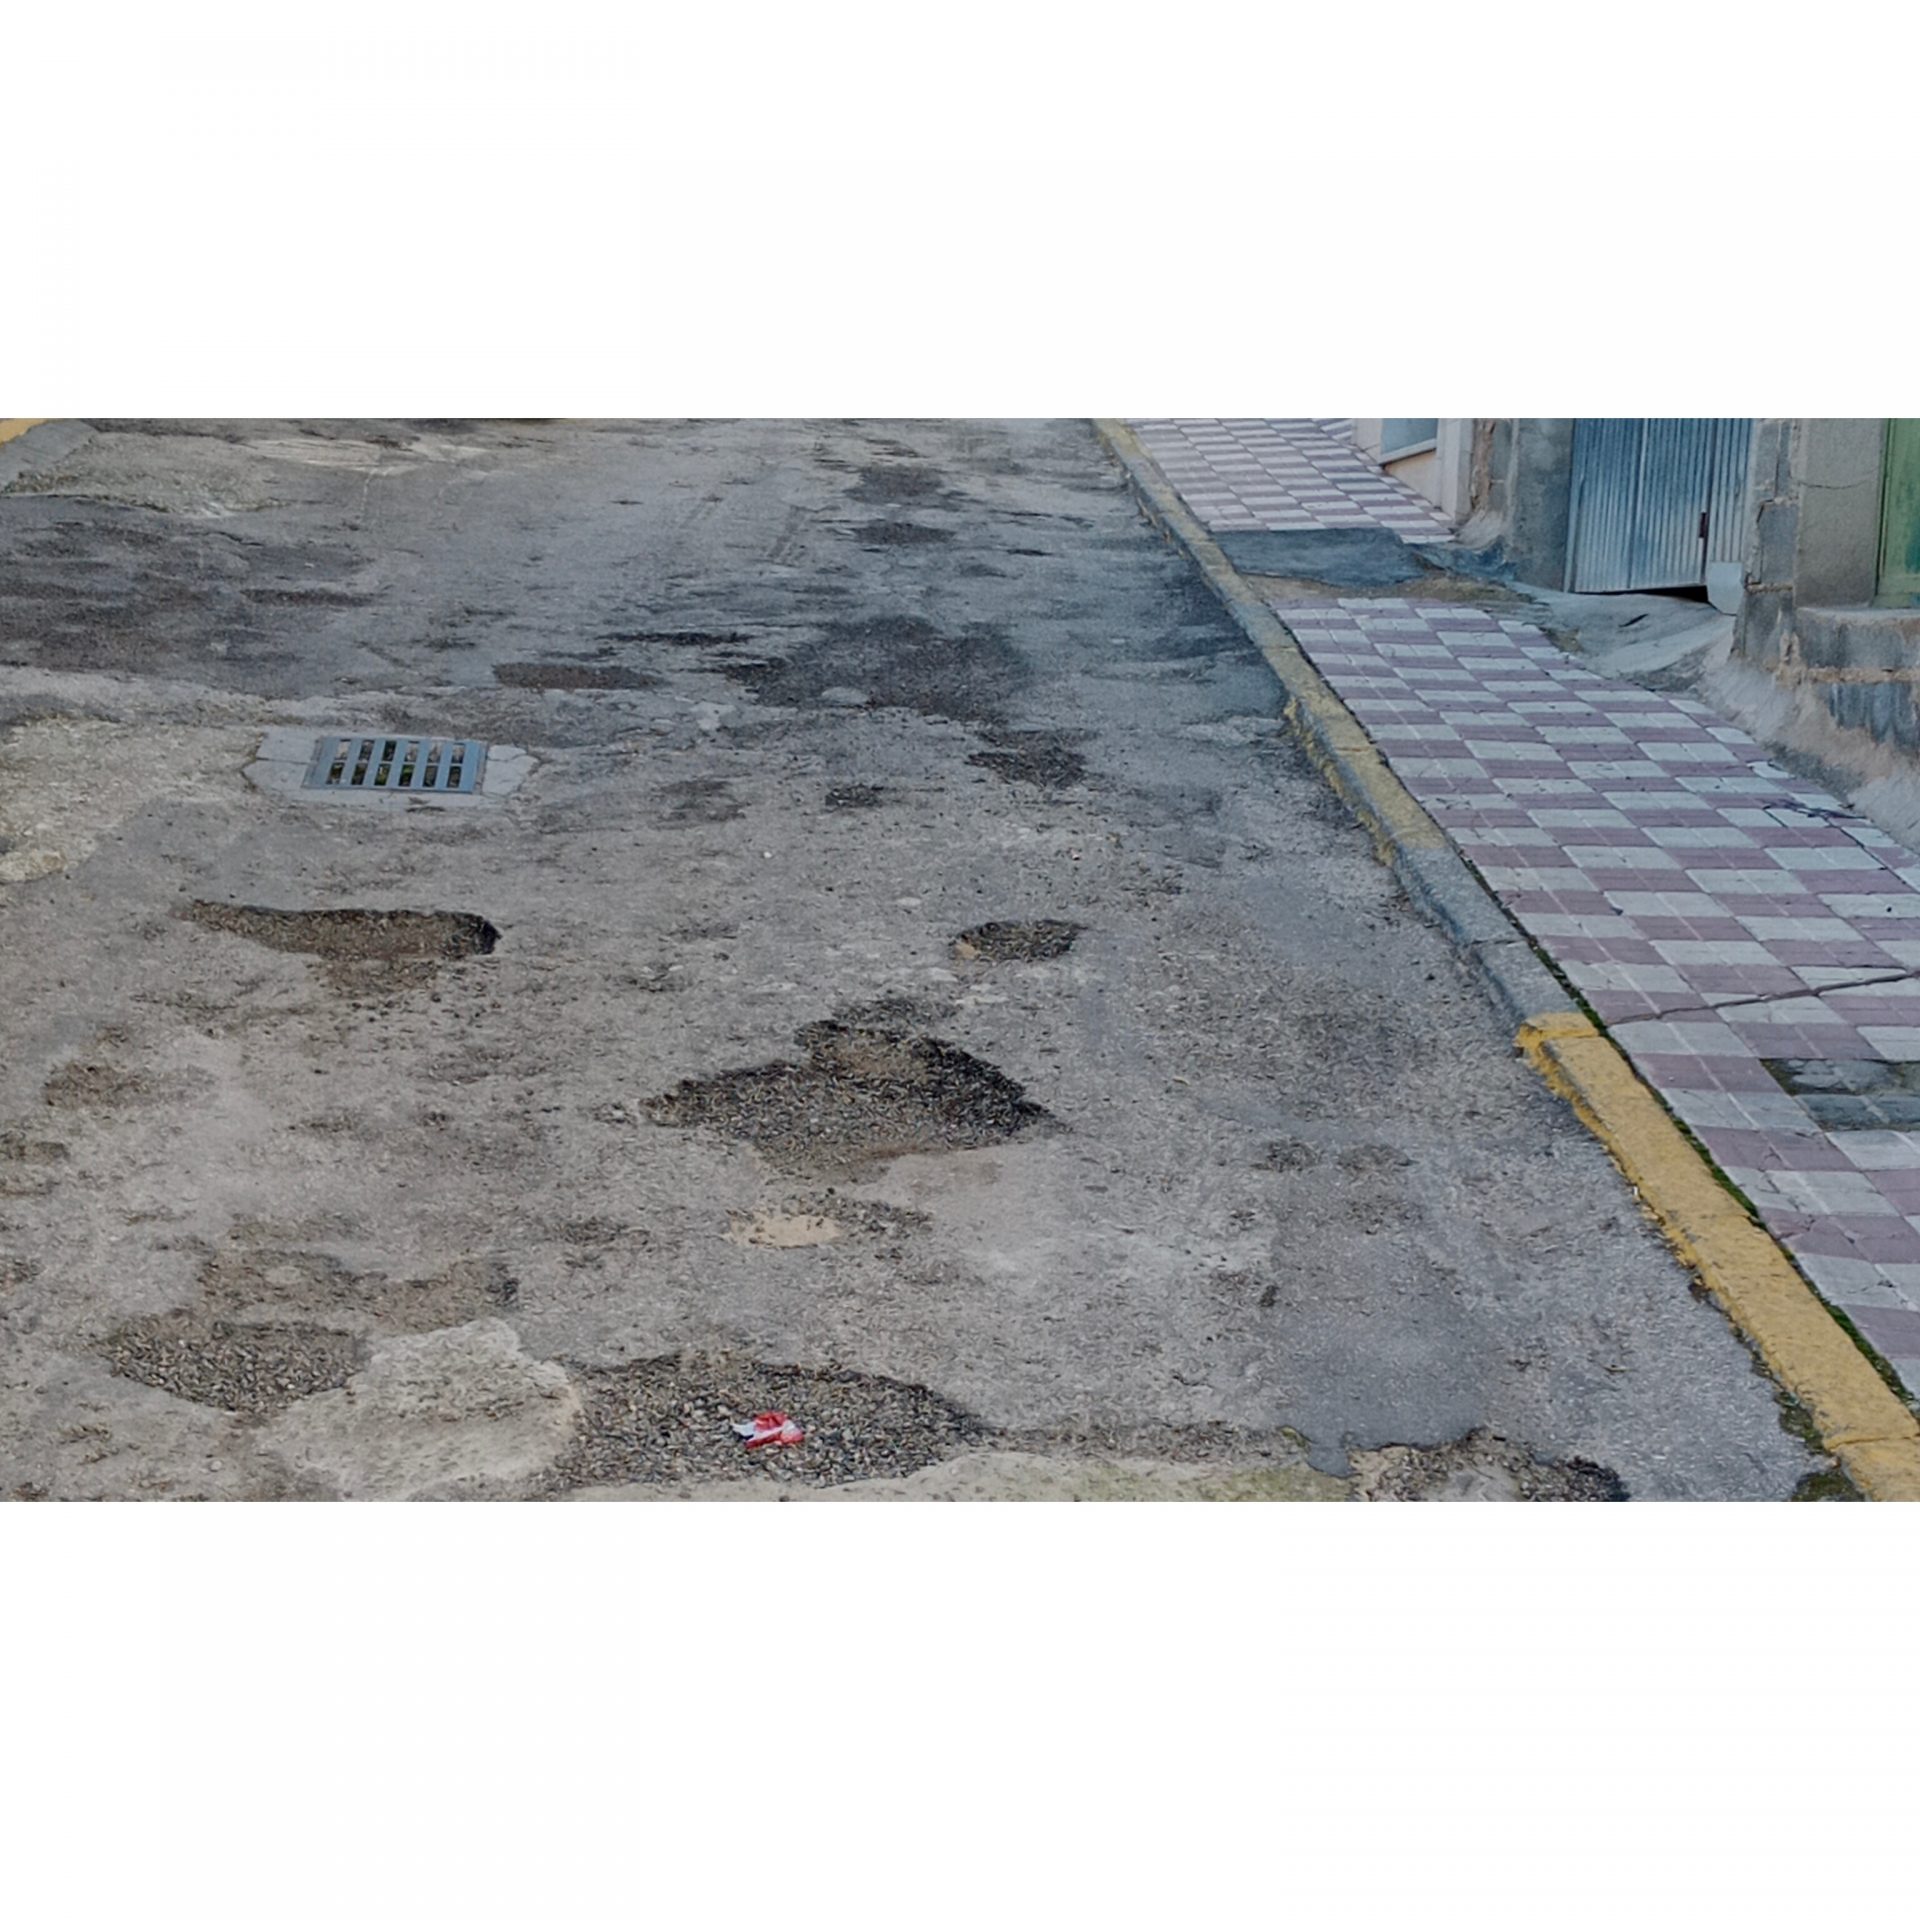 Ciudadanos pide el arreglo de las calles y aceras en mal estado de Jódar